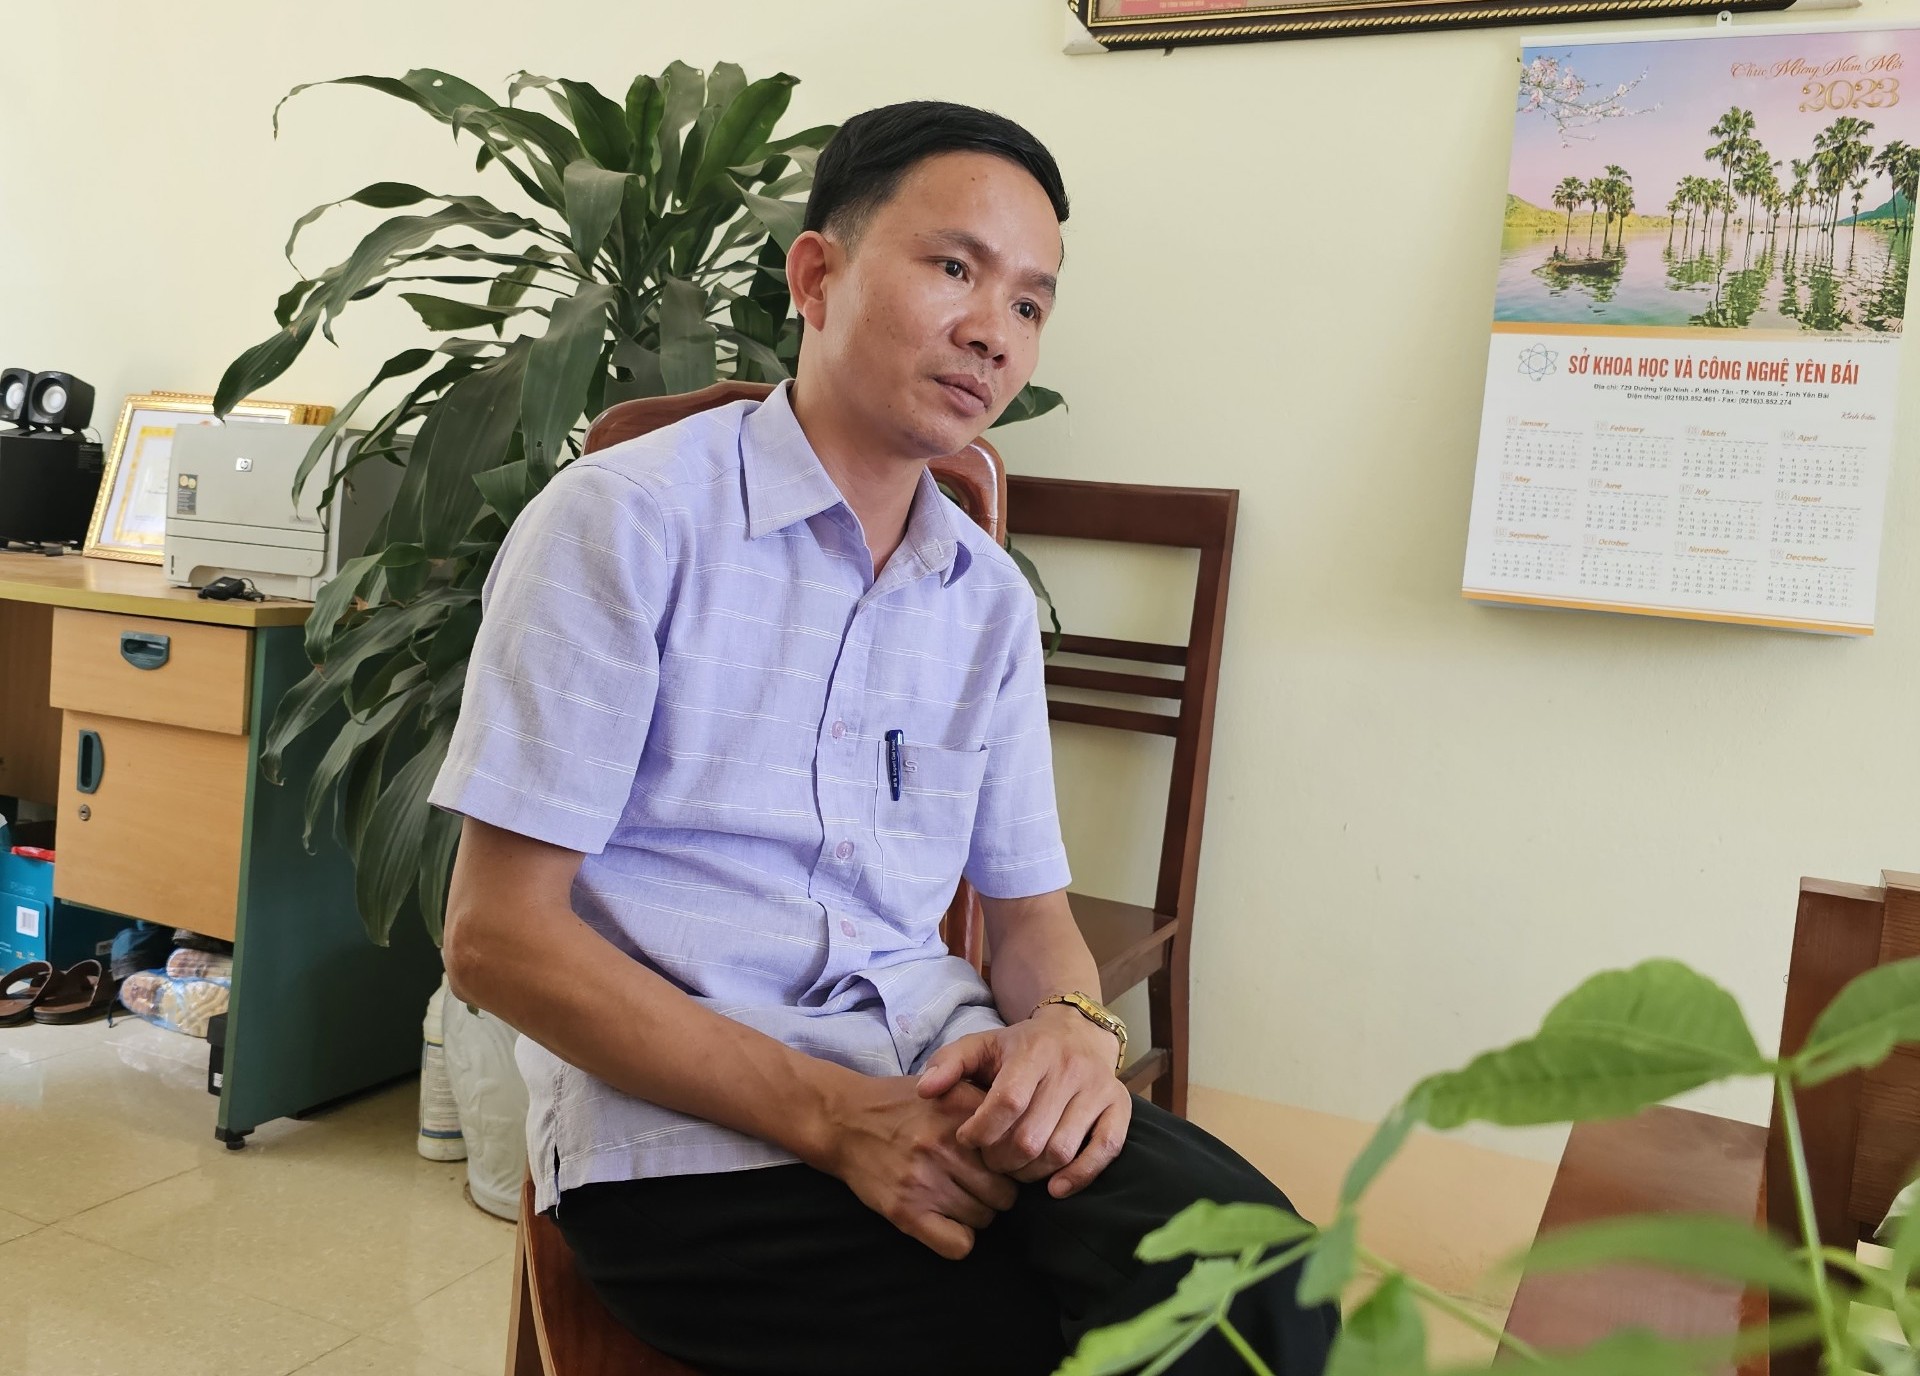 Ông Nguyễn Minh Tiến, Chủ tịch UBND xã Bảo Ái trong buổi làm việc với PV Báo Lao Động. Ảnh: Bảo Nguyên